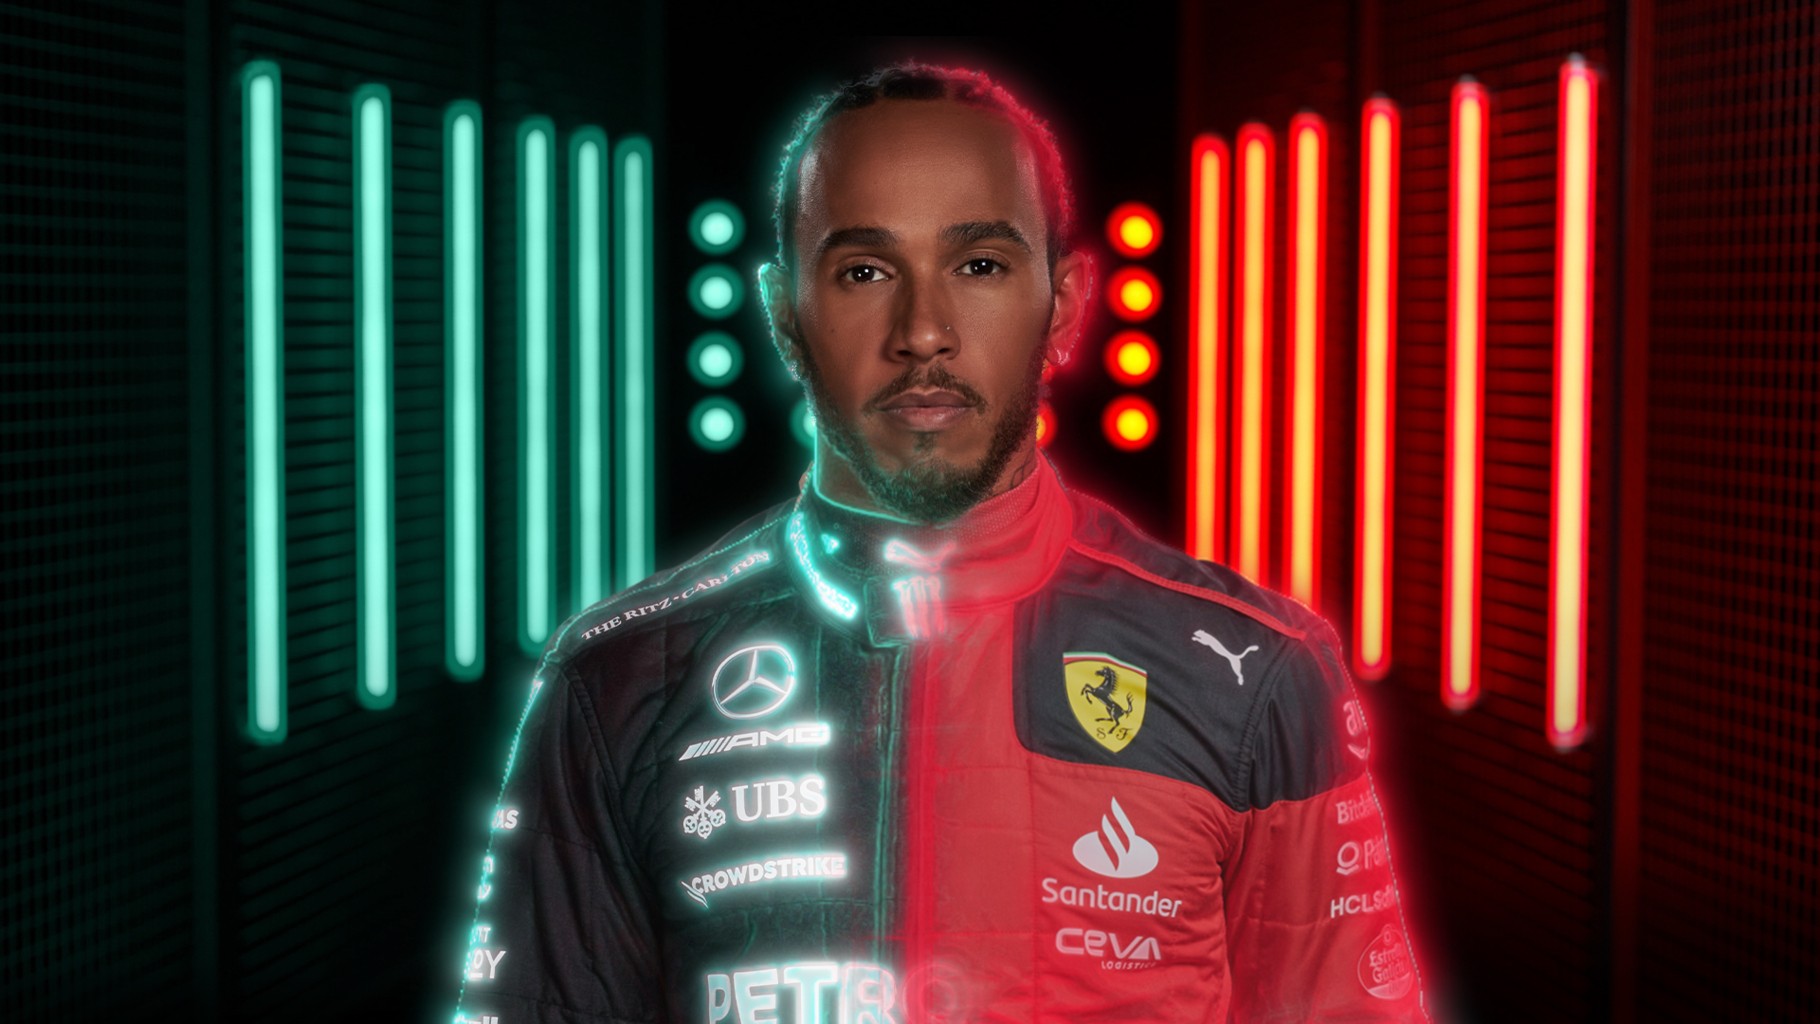 Ralf Schumacher, sobre ida de Hamilton à Ferrari: “Quer voltar a ganhar dinheiro”